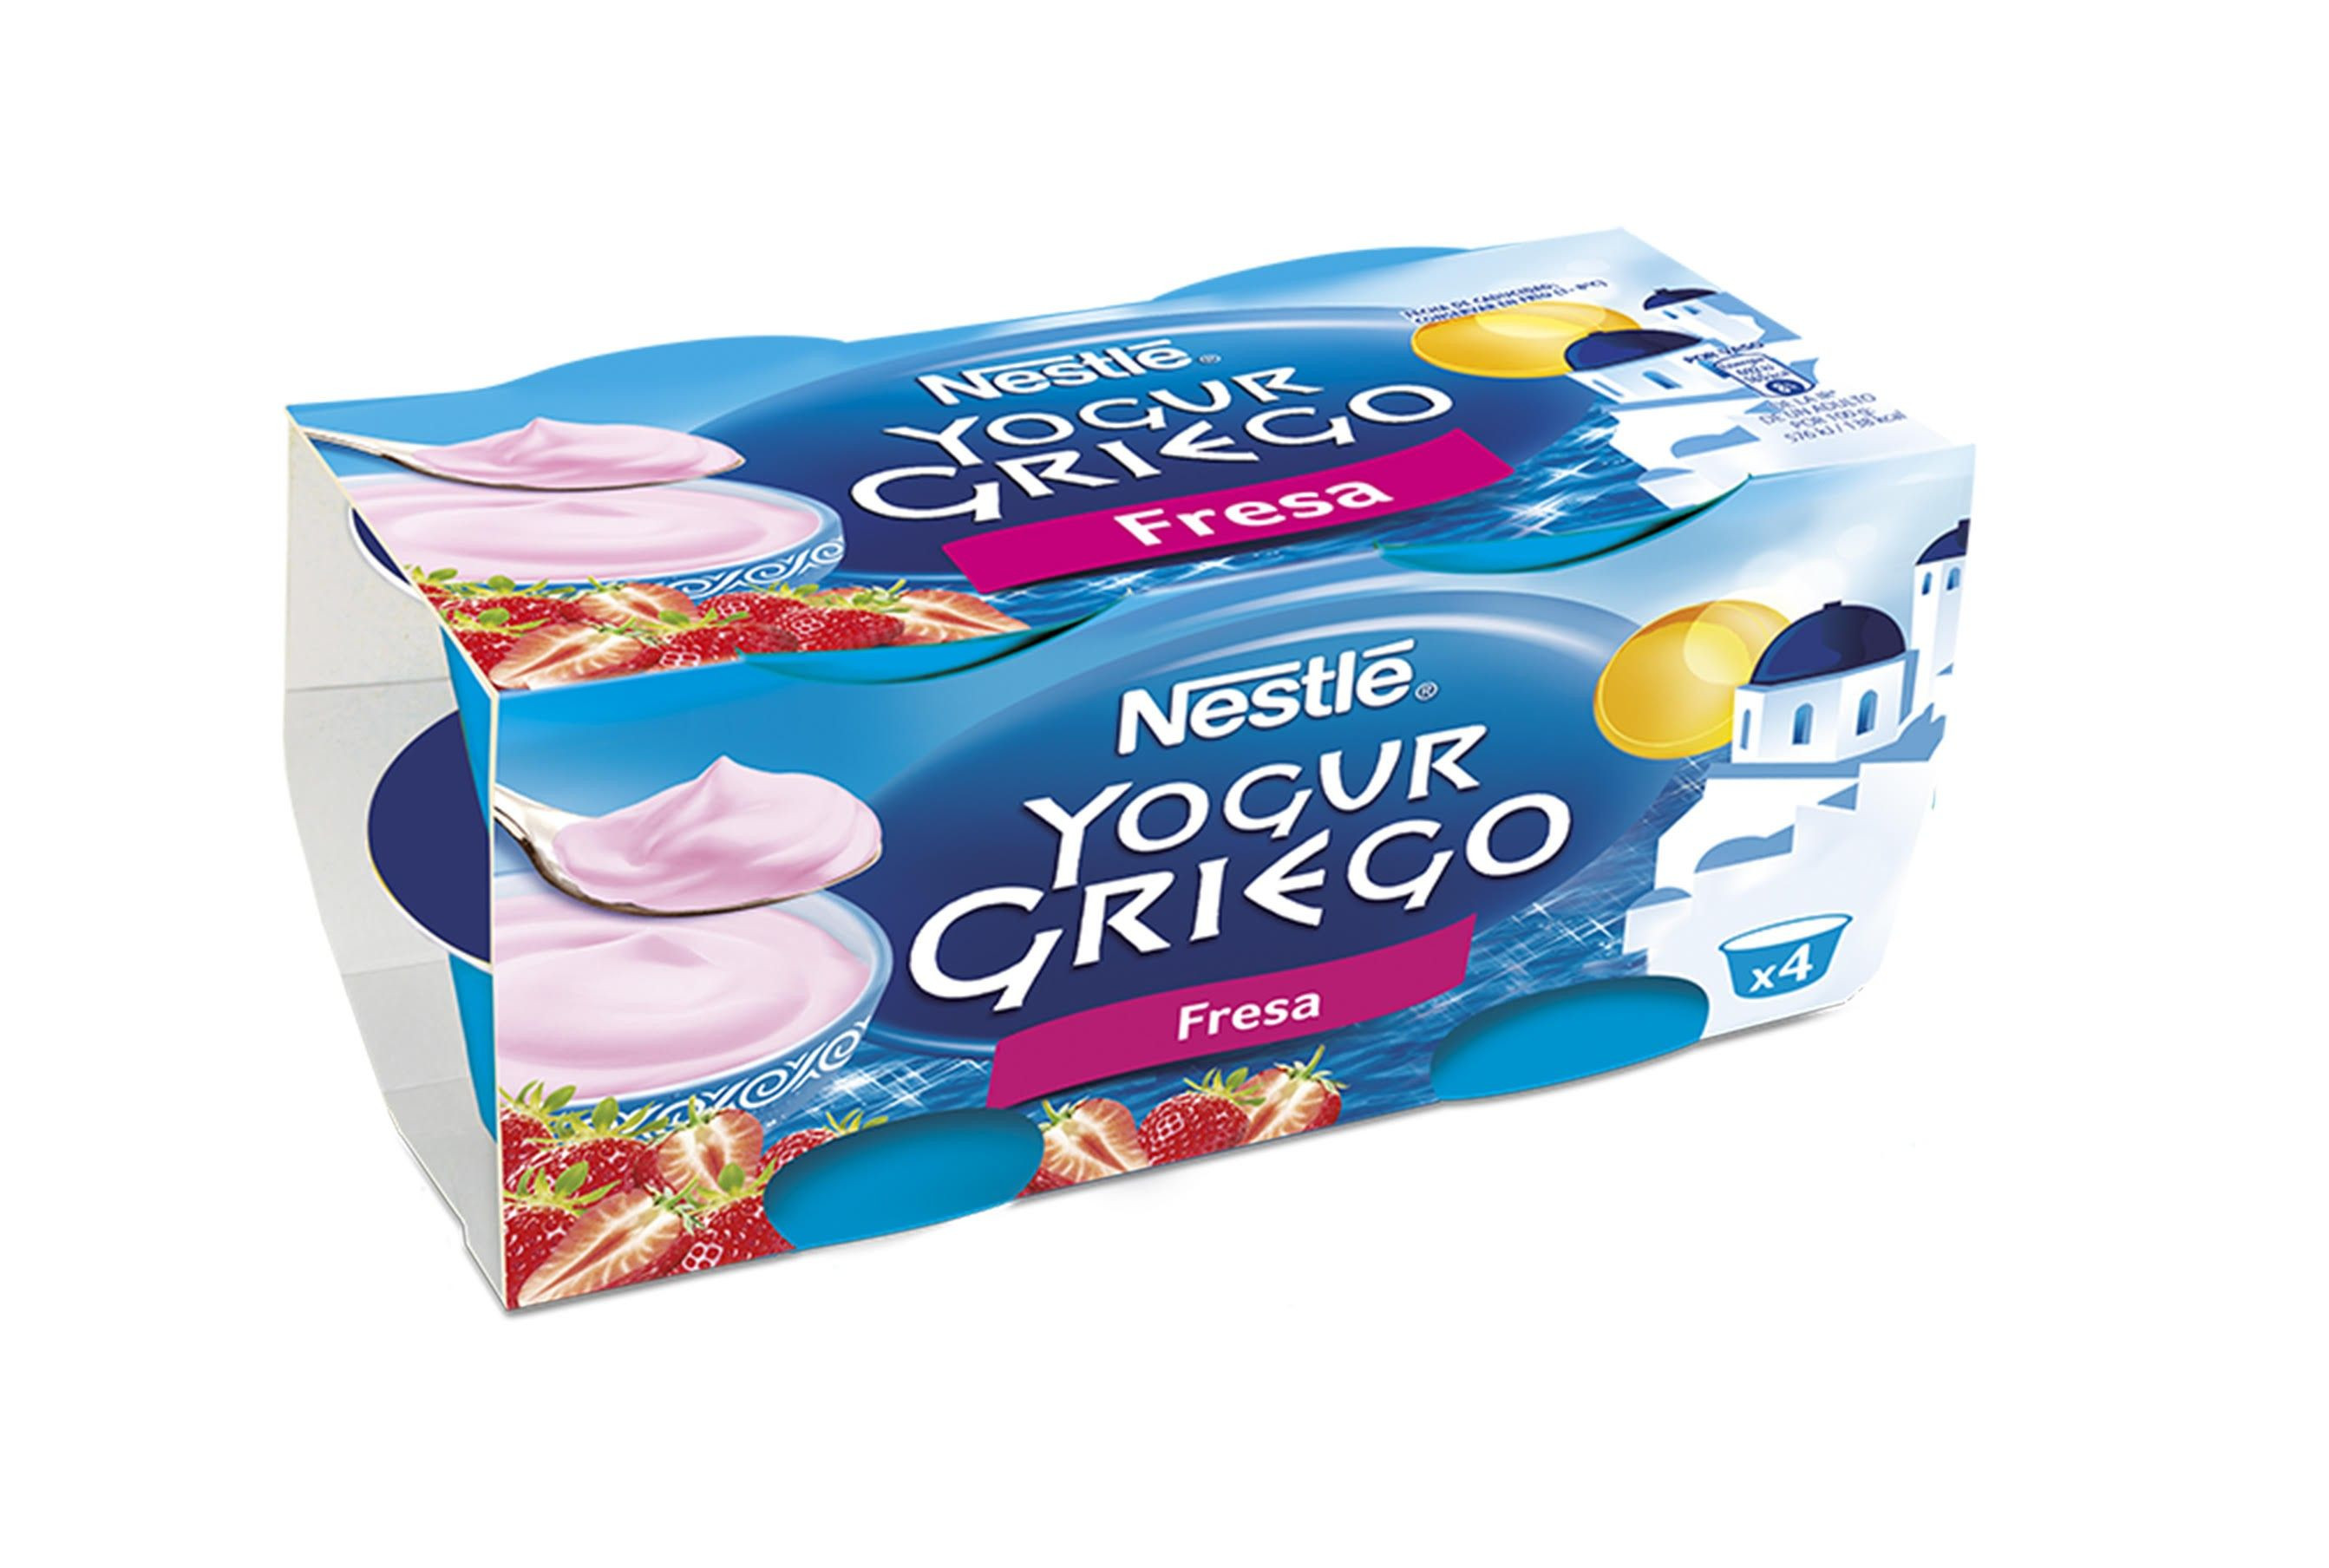 Nestlé Yogur sabor Fresa, Yogures Nestlé, Nestlé